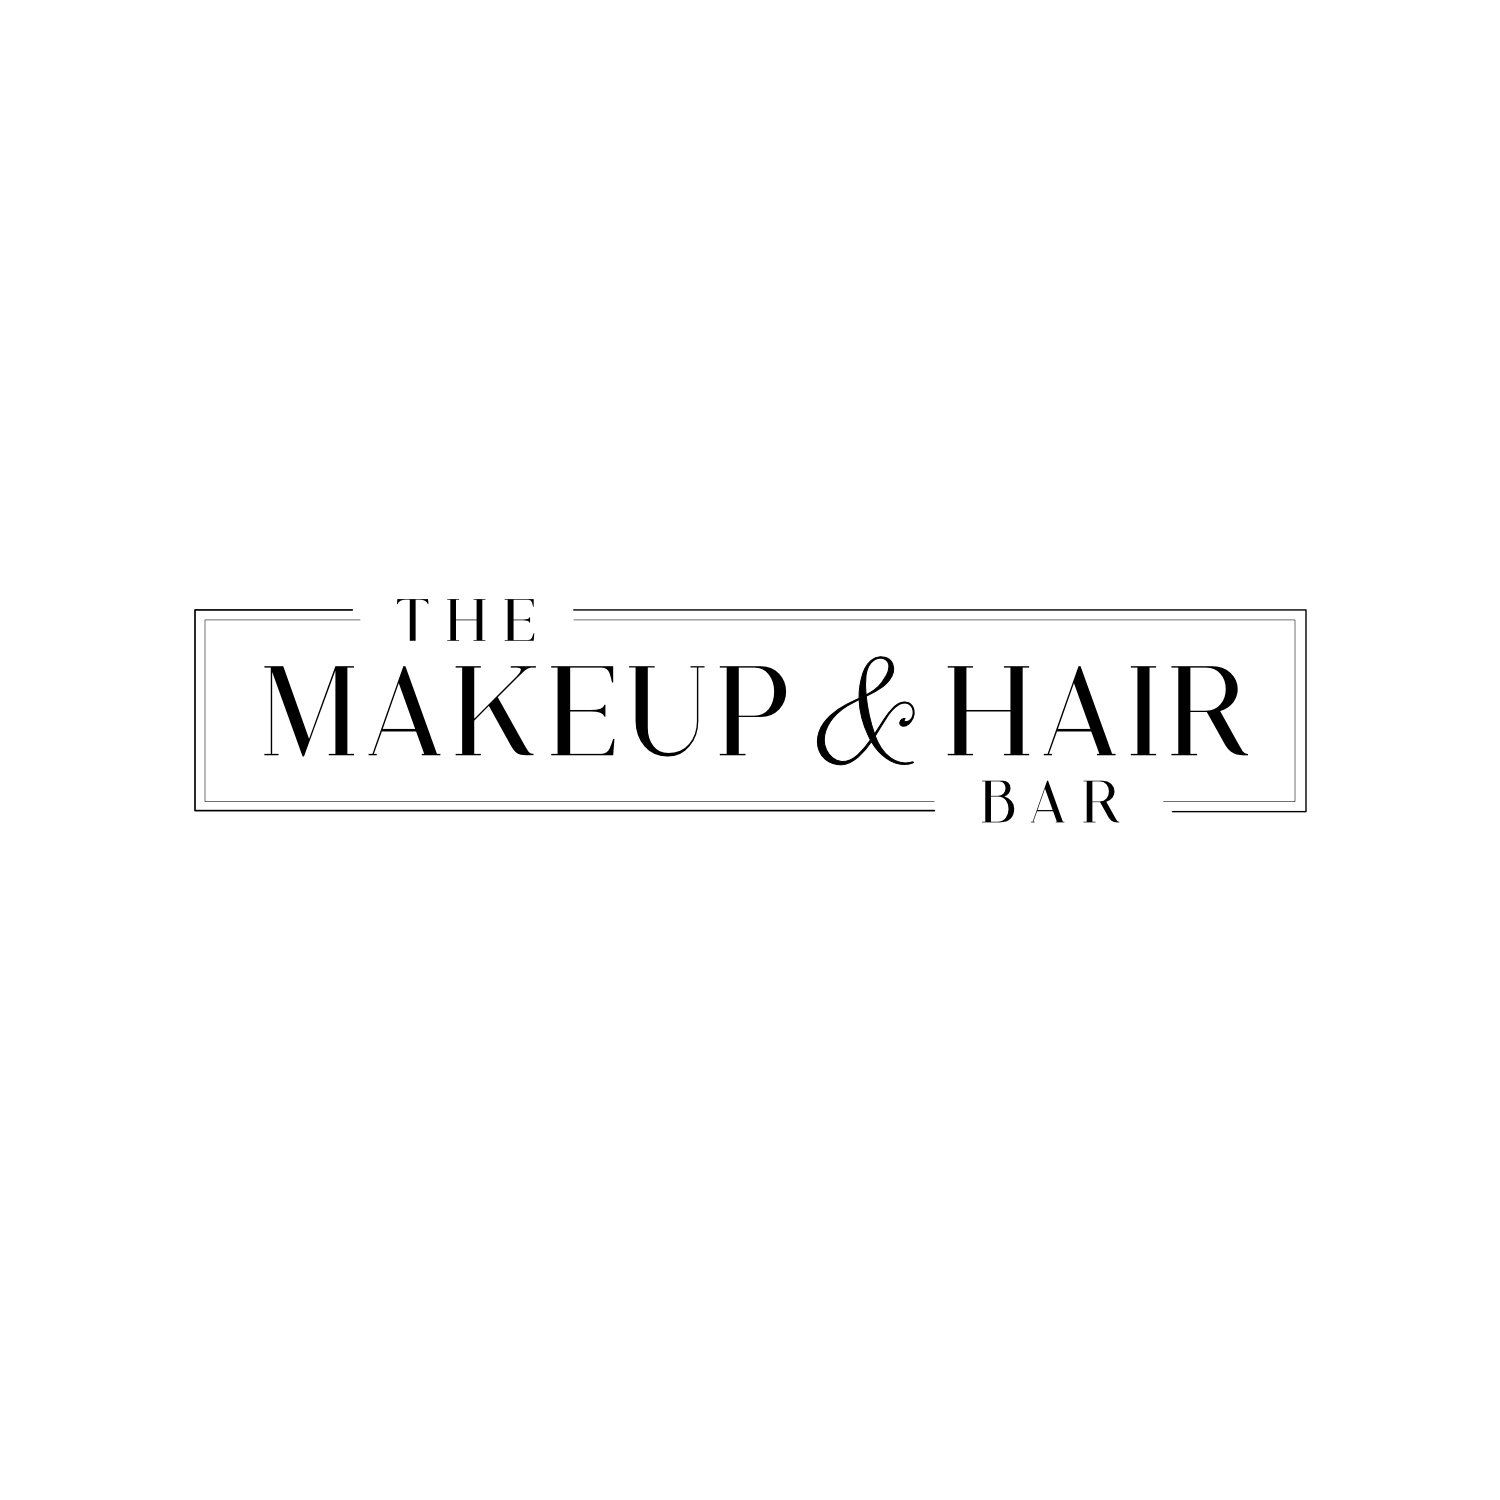 THE MAKEUP AND HAIR BAR logo